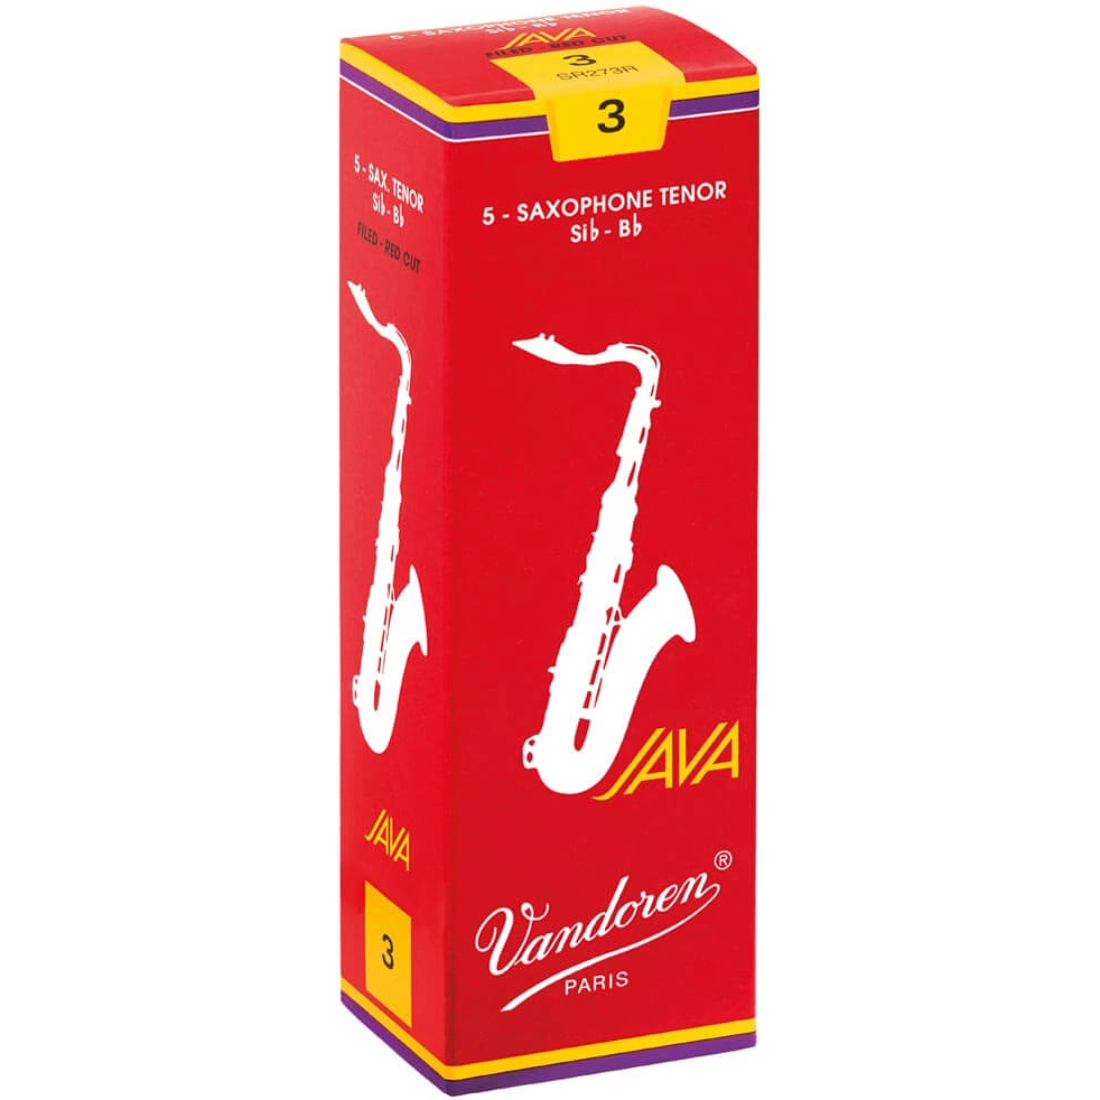 Red box of 5 Vandoren Java Red tenor saxophone reeds